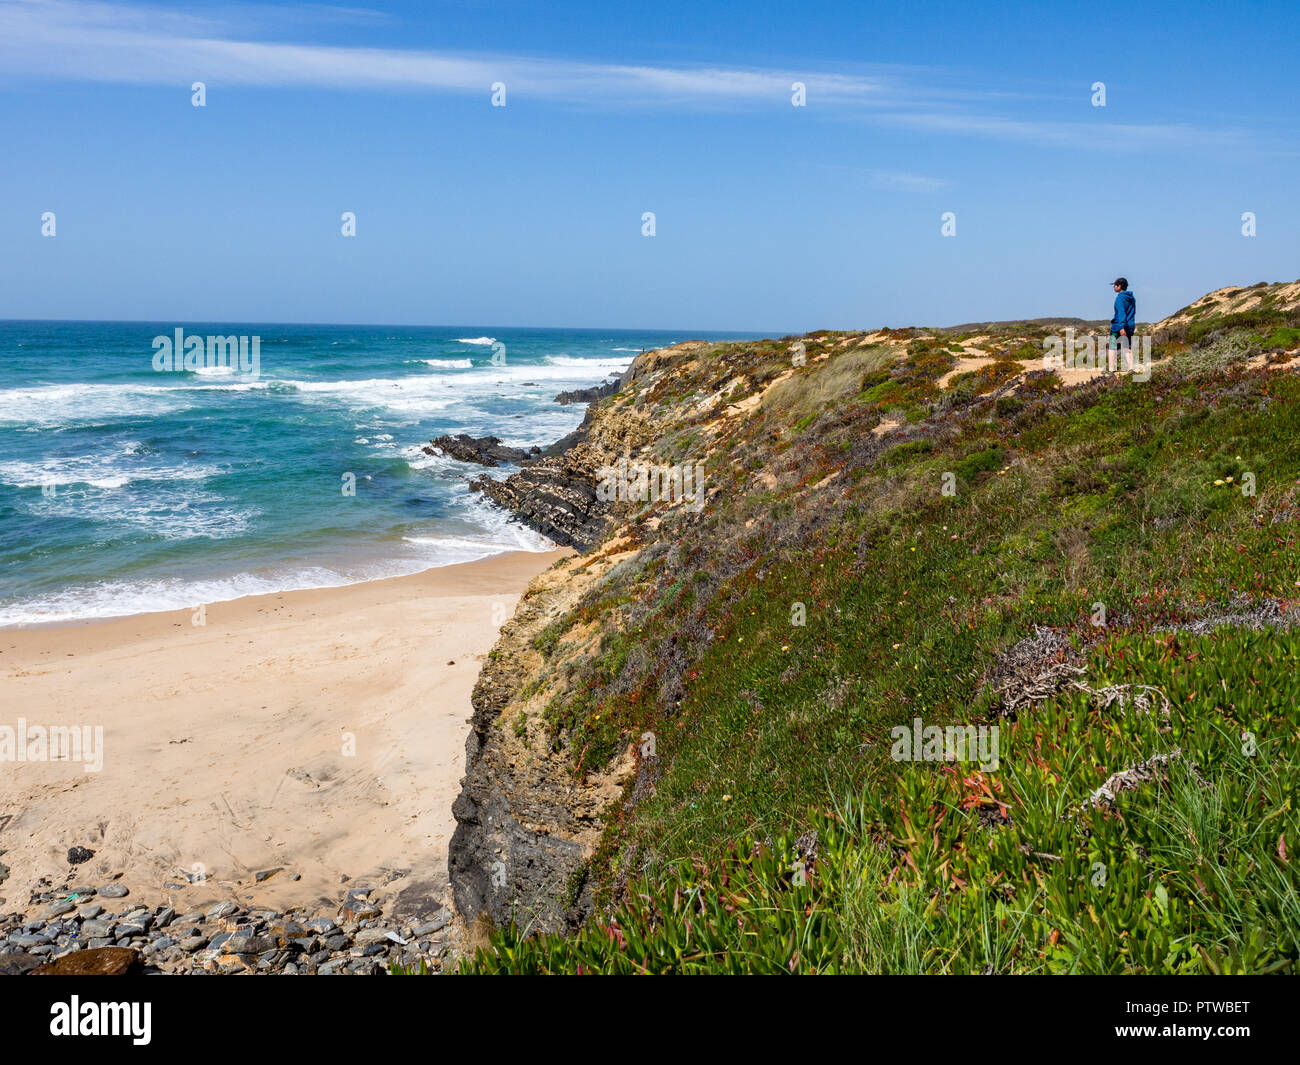 10 Jahre alter Junge Wanderer im Praia de Almograve, Alentejo, Costa Vicentina Küste von Portugal Stockfoto